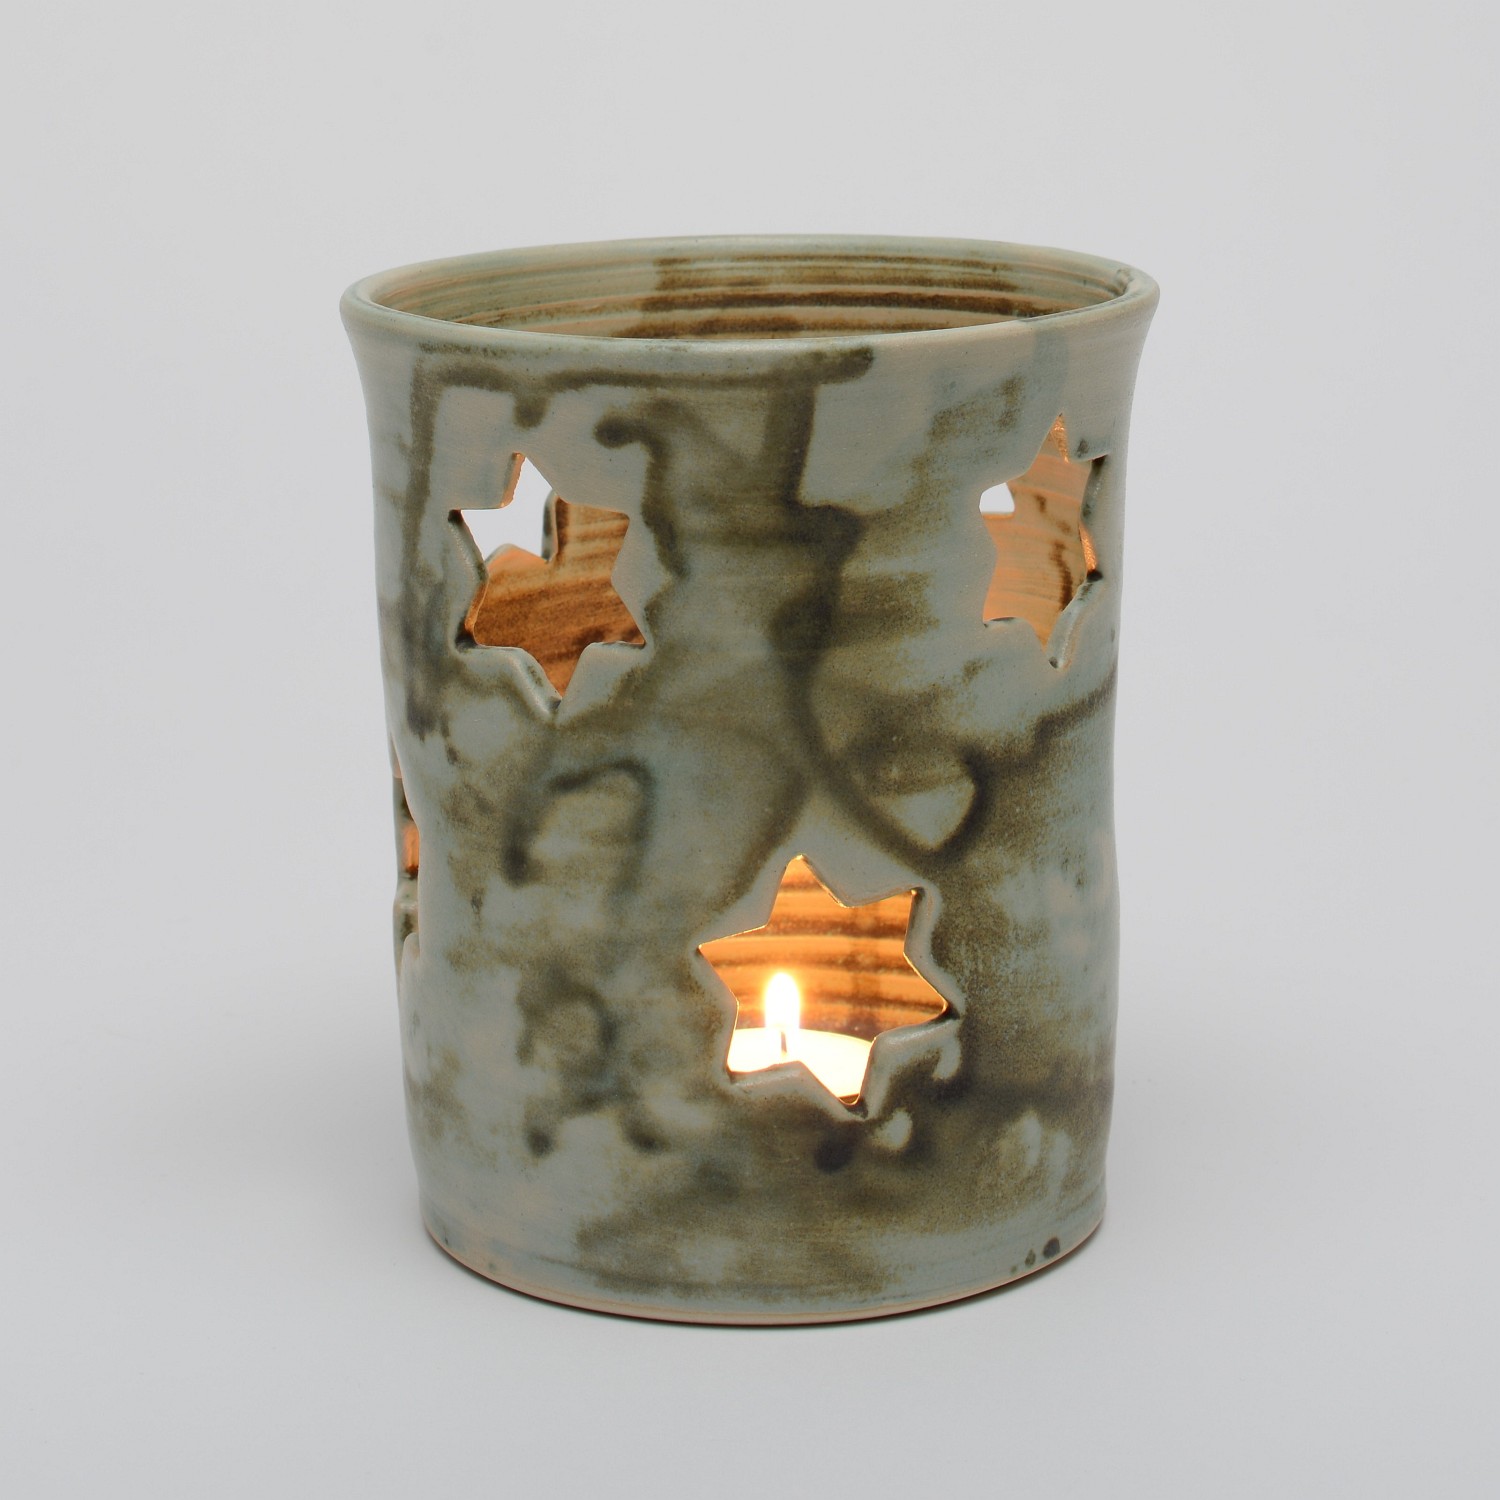 Kerzenlicht "Stern" aus Keramik